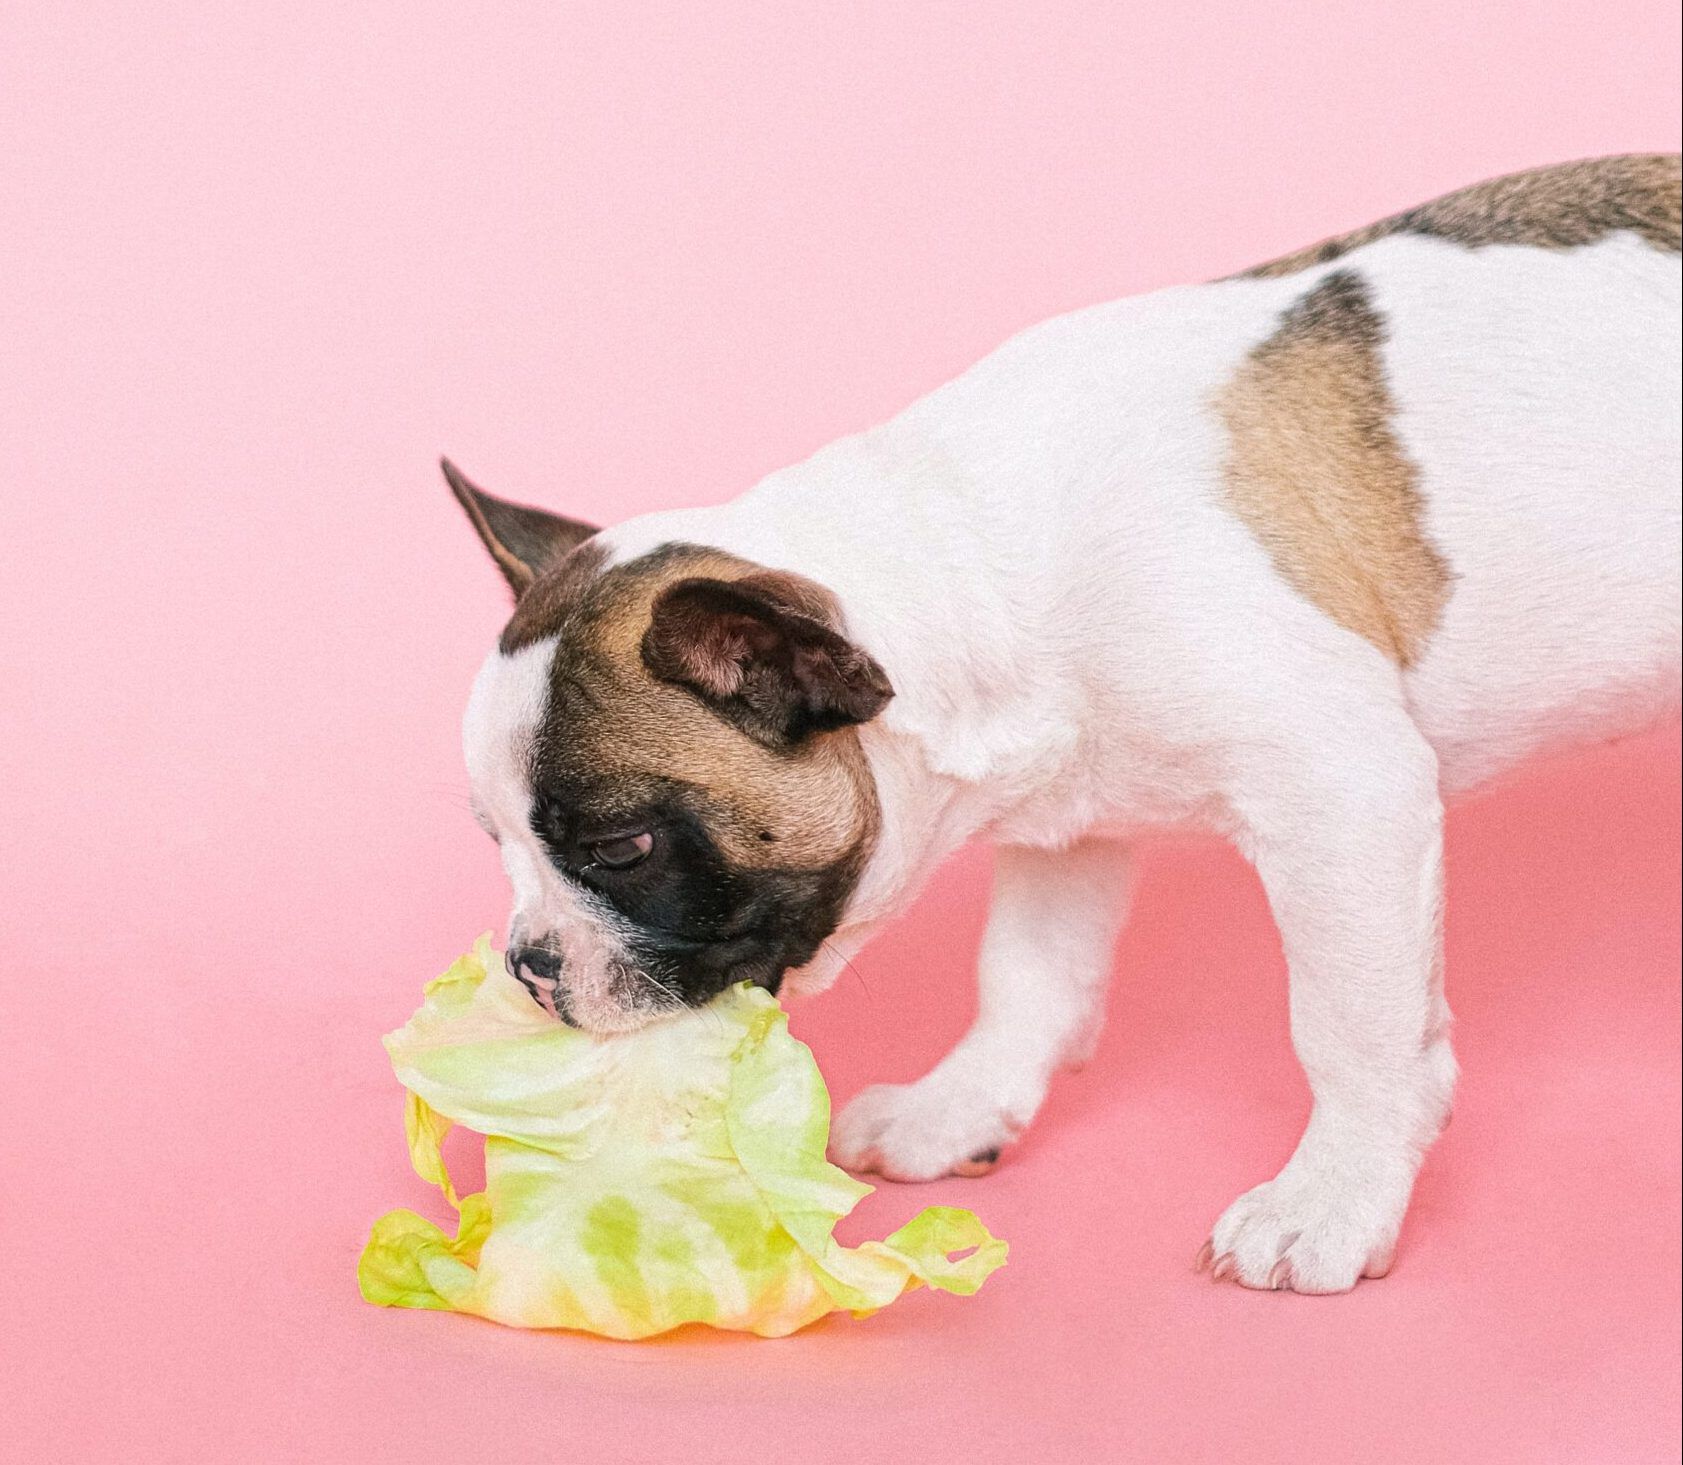 dog eating leaf of lettuce